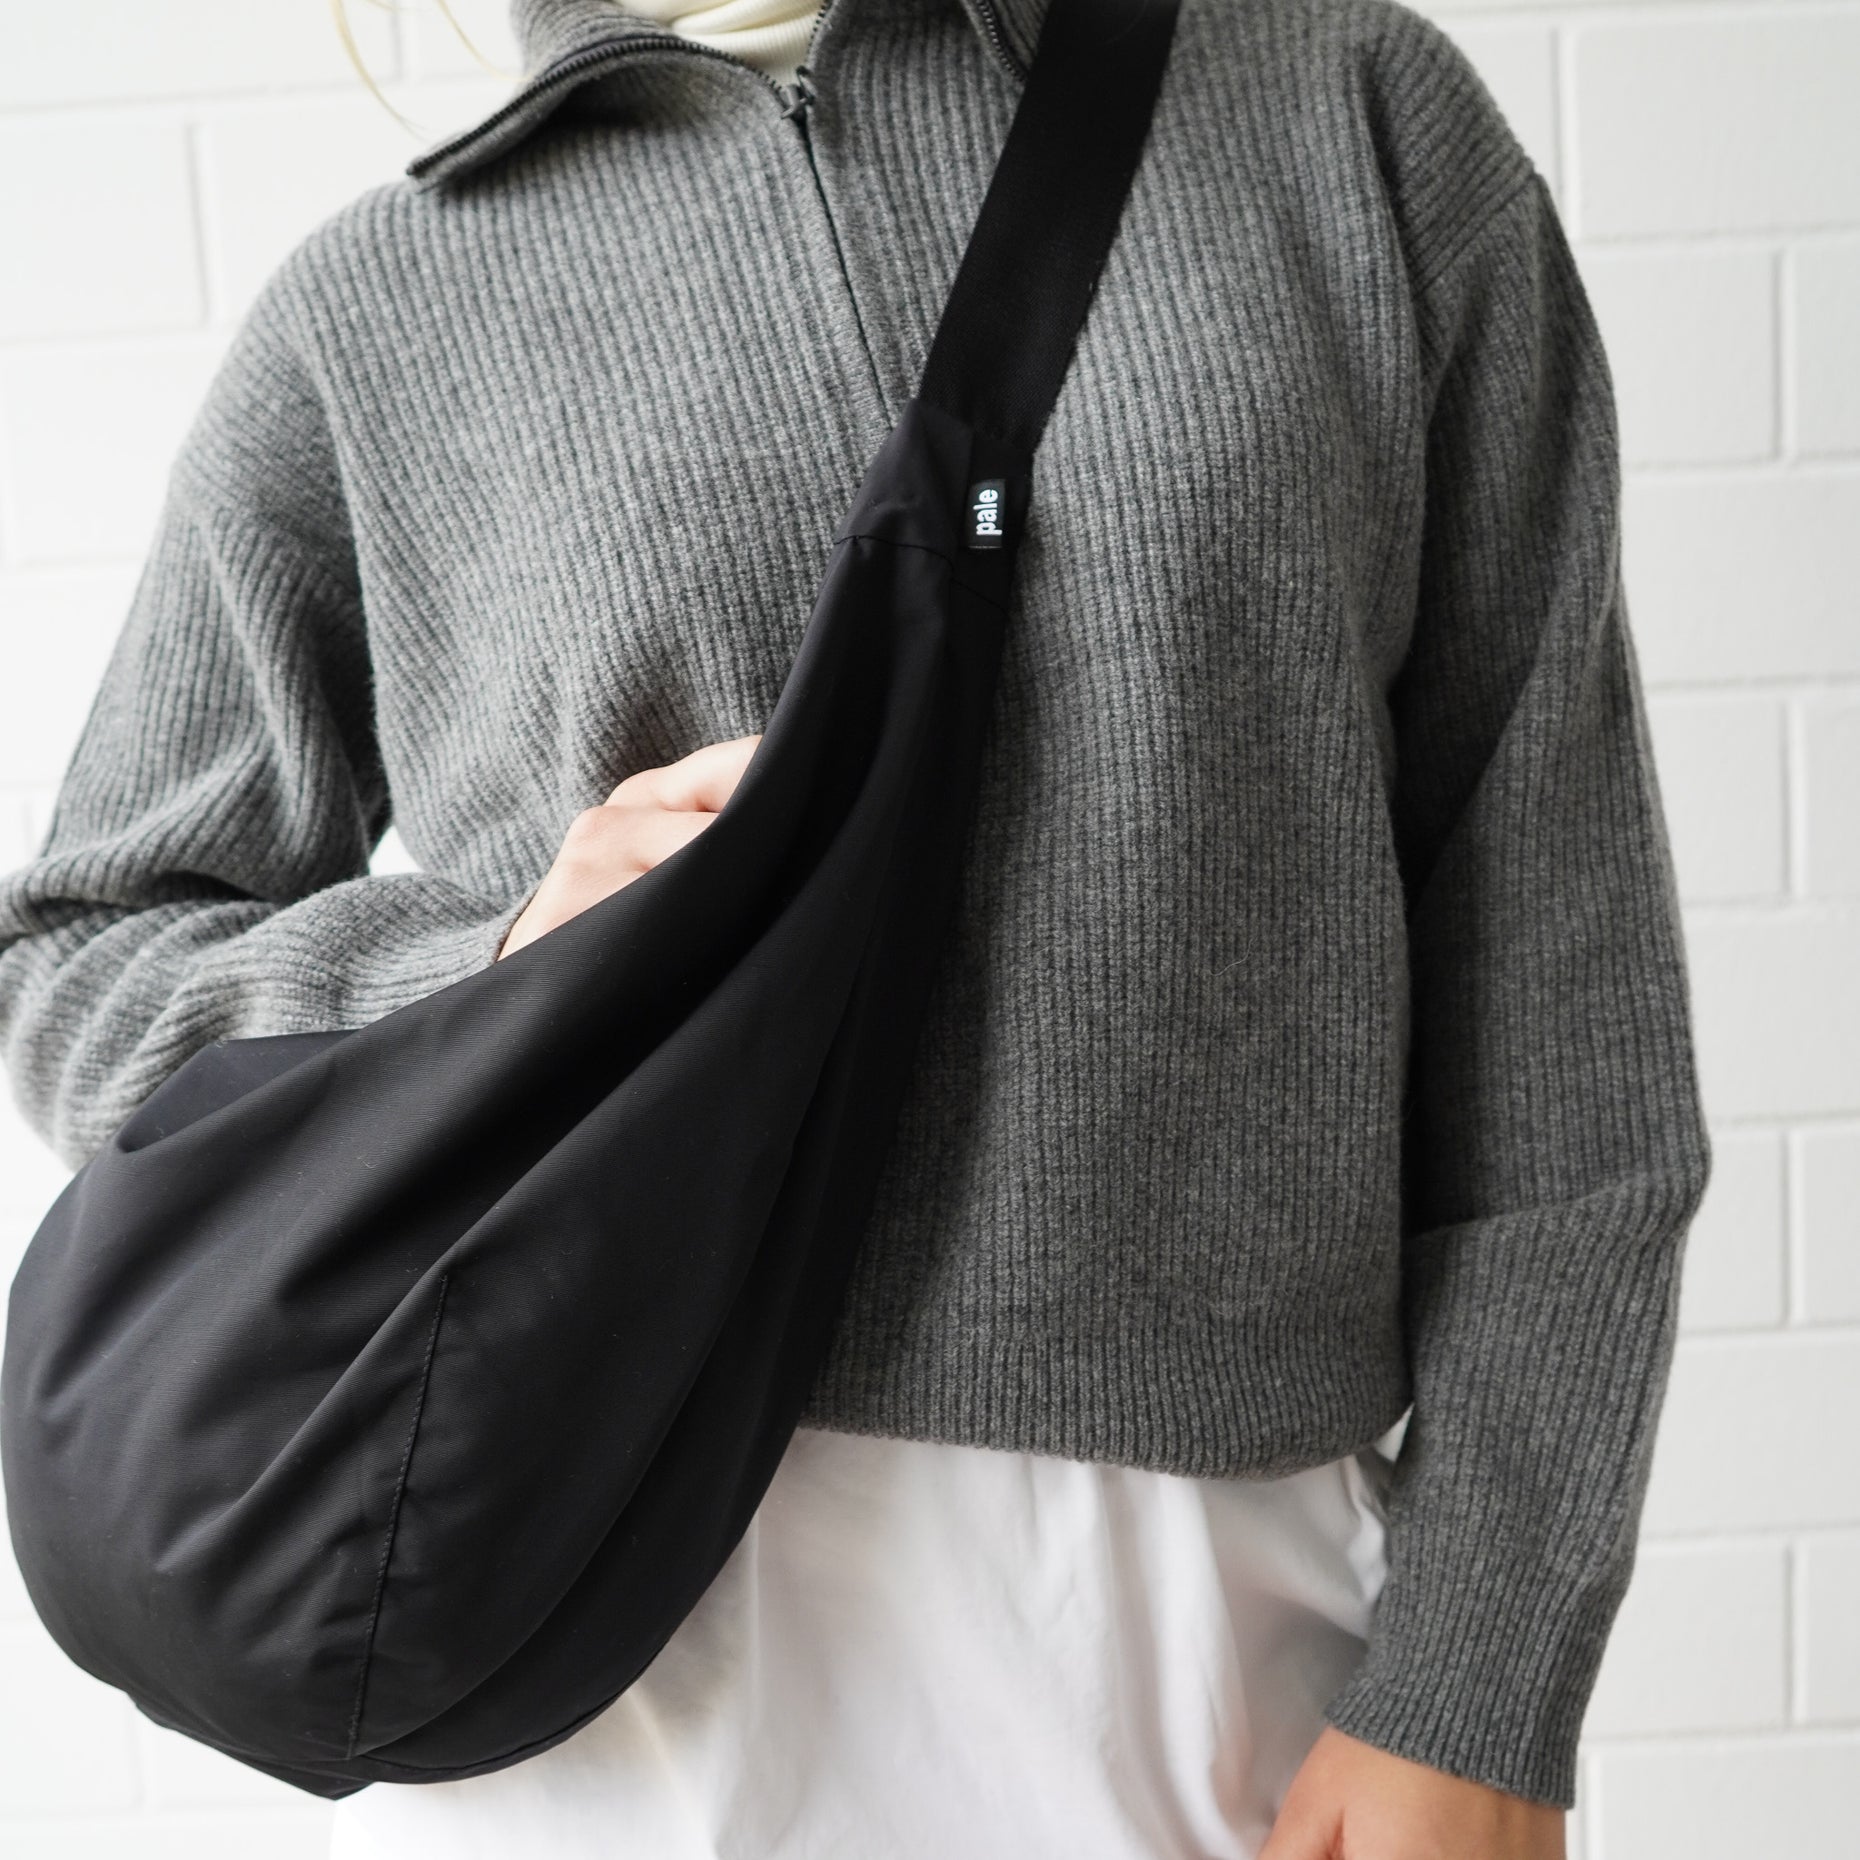 pale berlin bags - Taschen im minimalistischen Design